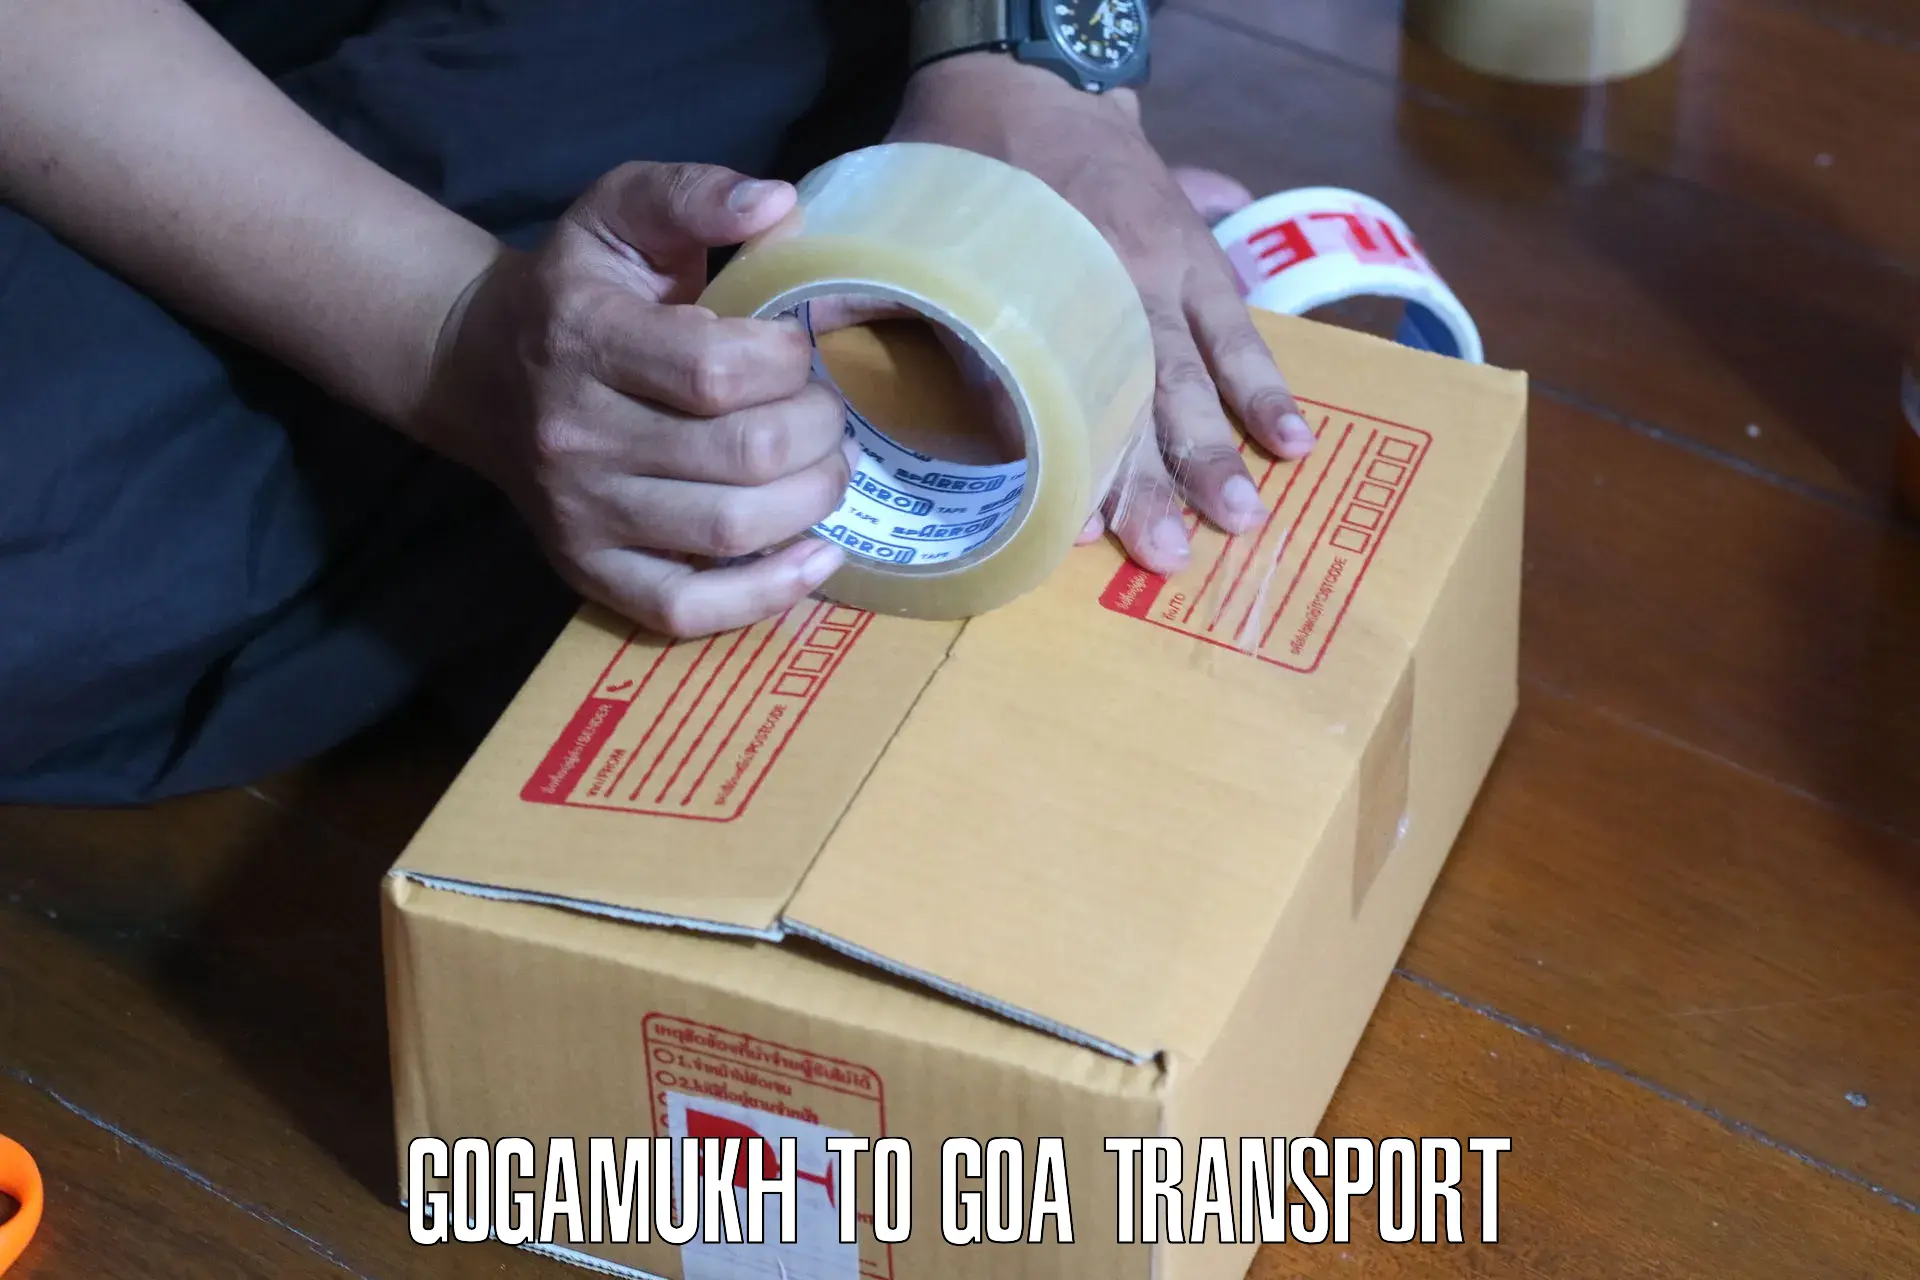 Intercity transport Gogamukh to South Goa